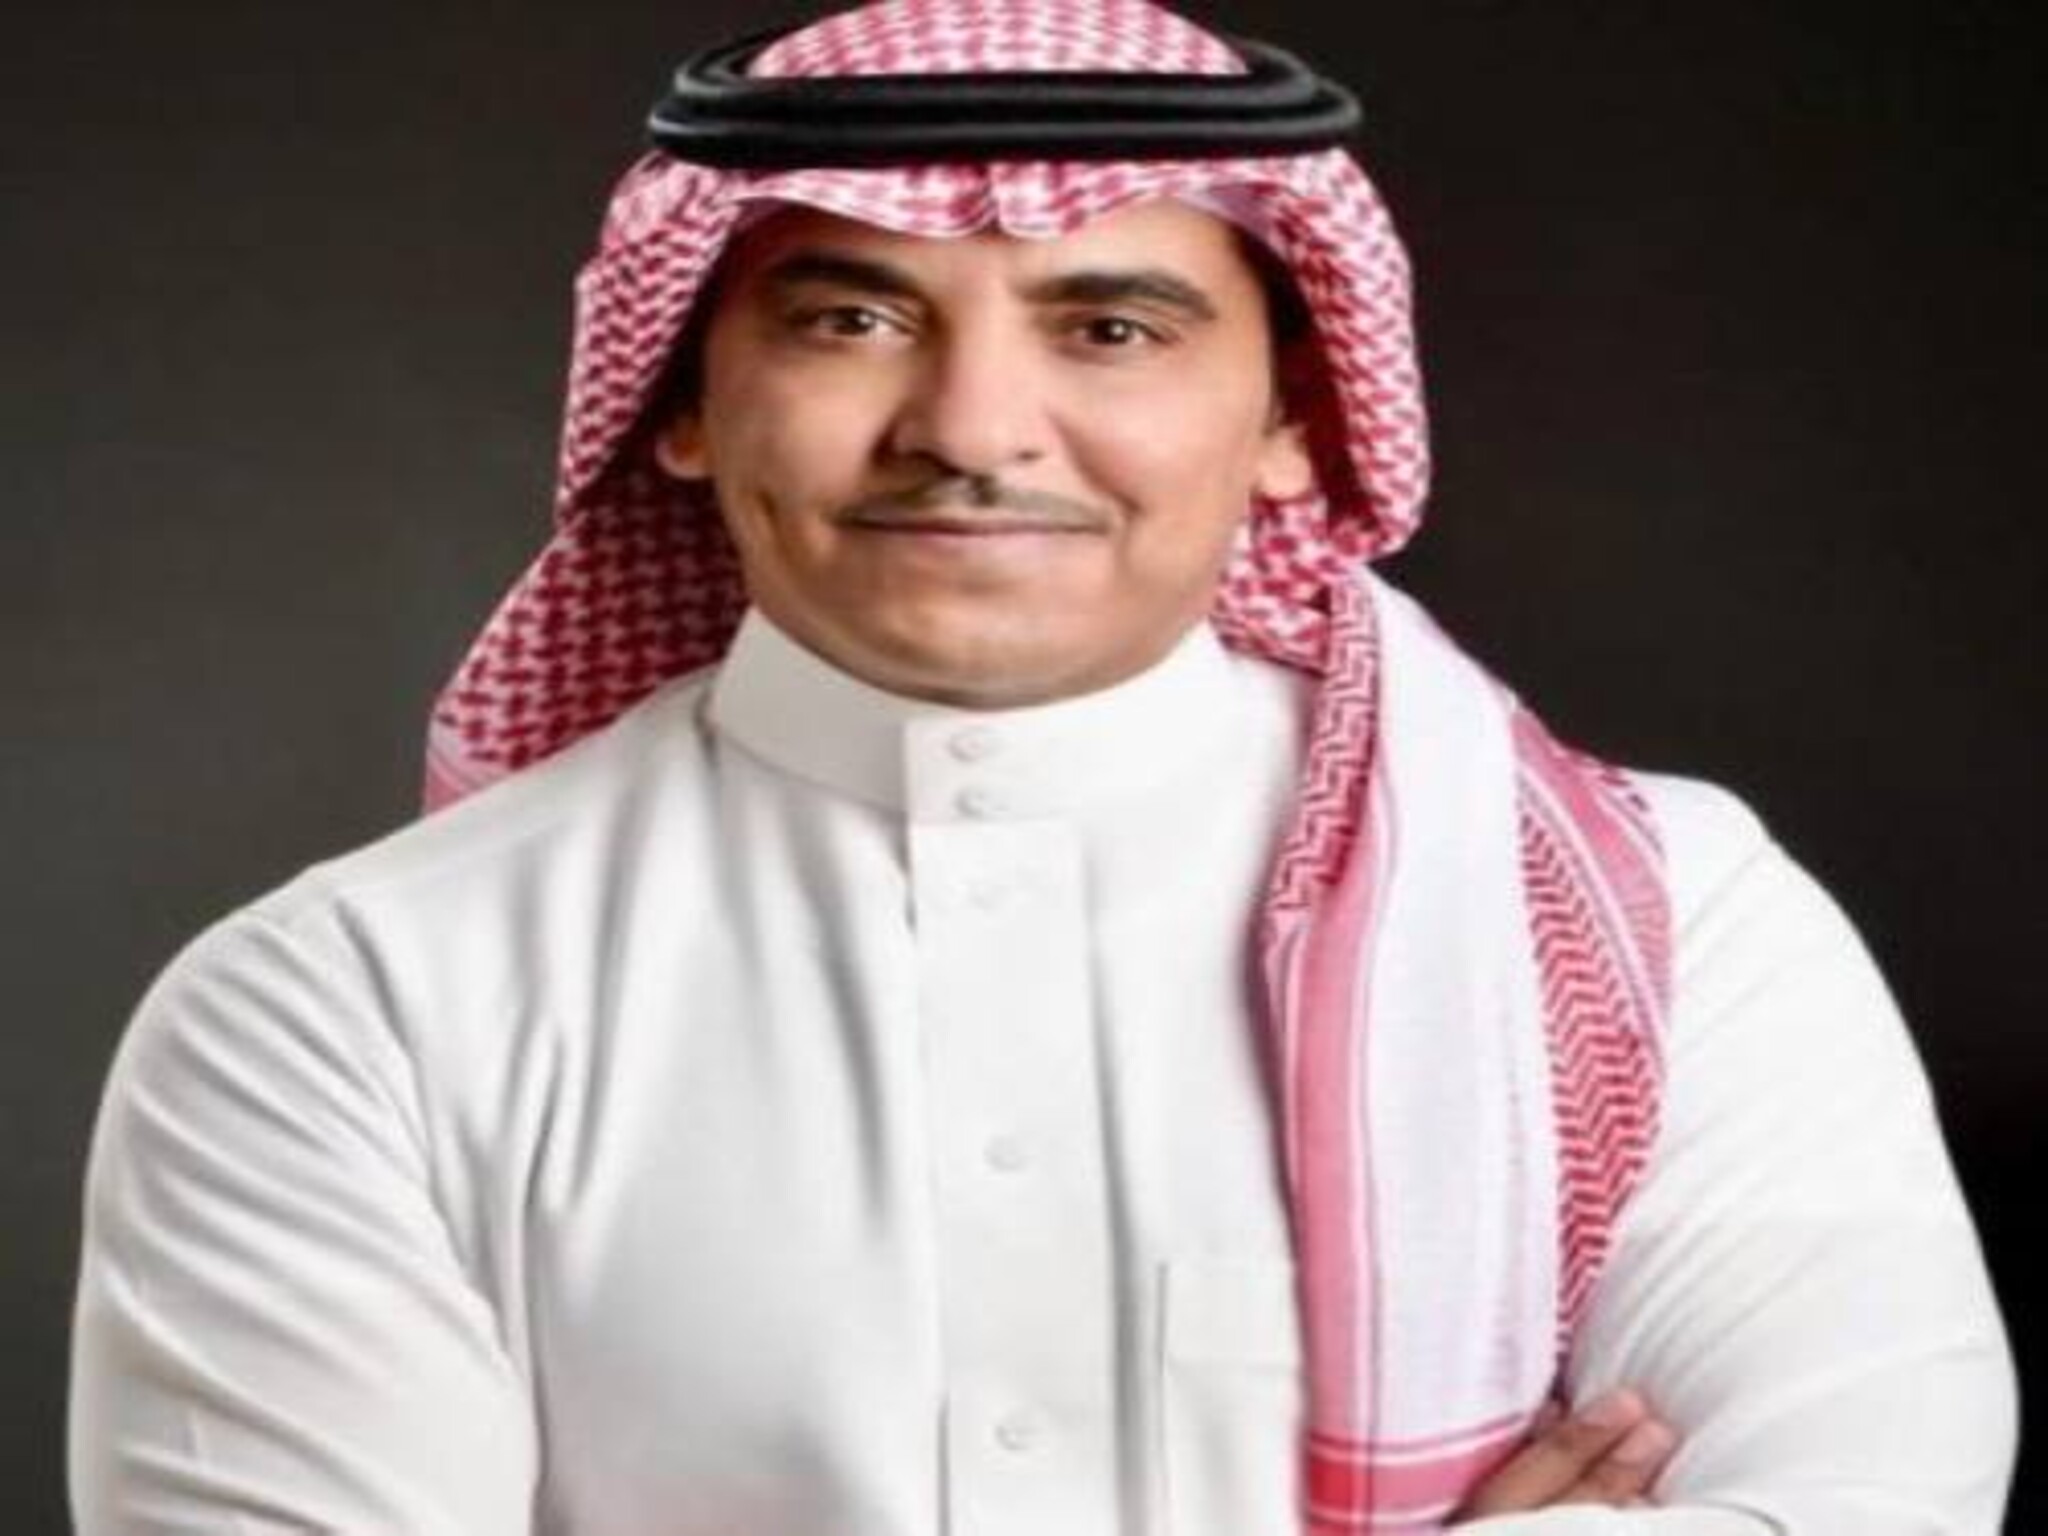 بأوامر ملكية « سلمان الدوسري » وزير الأعلام الجديد في المملكة السعودية